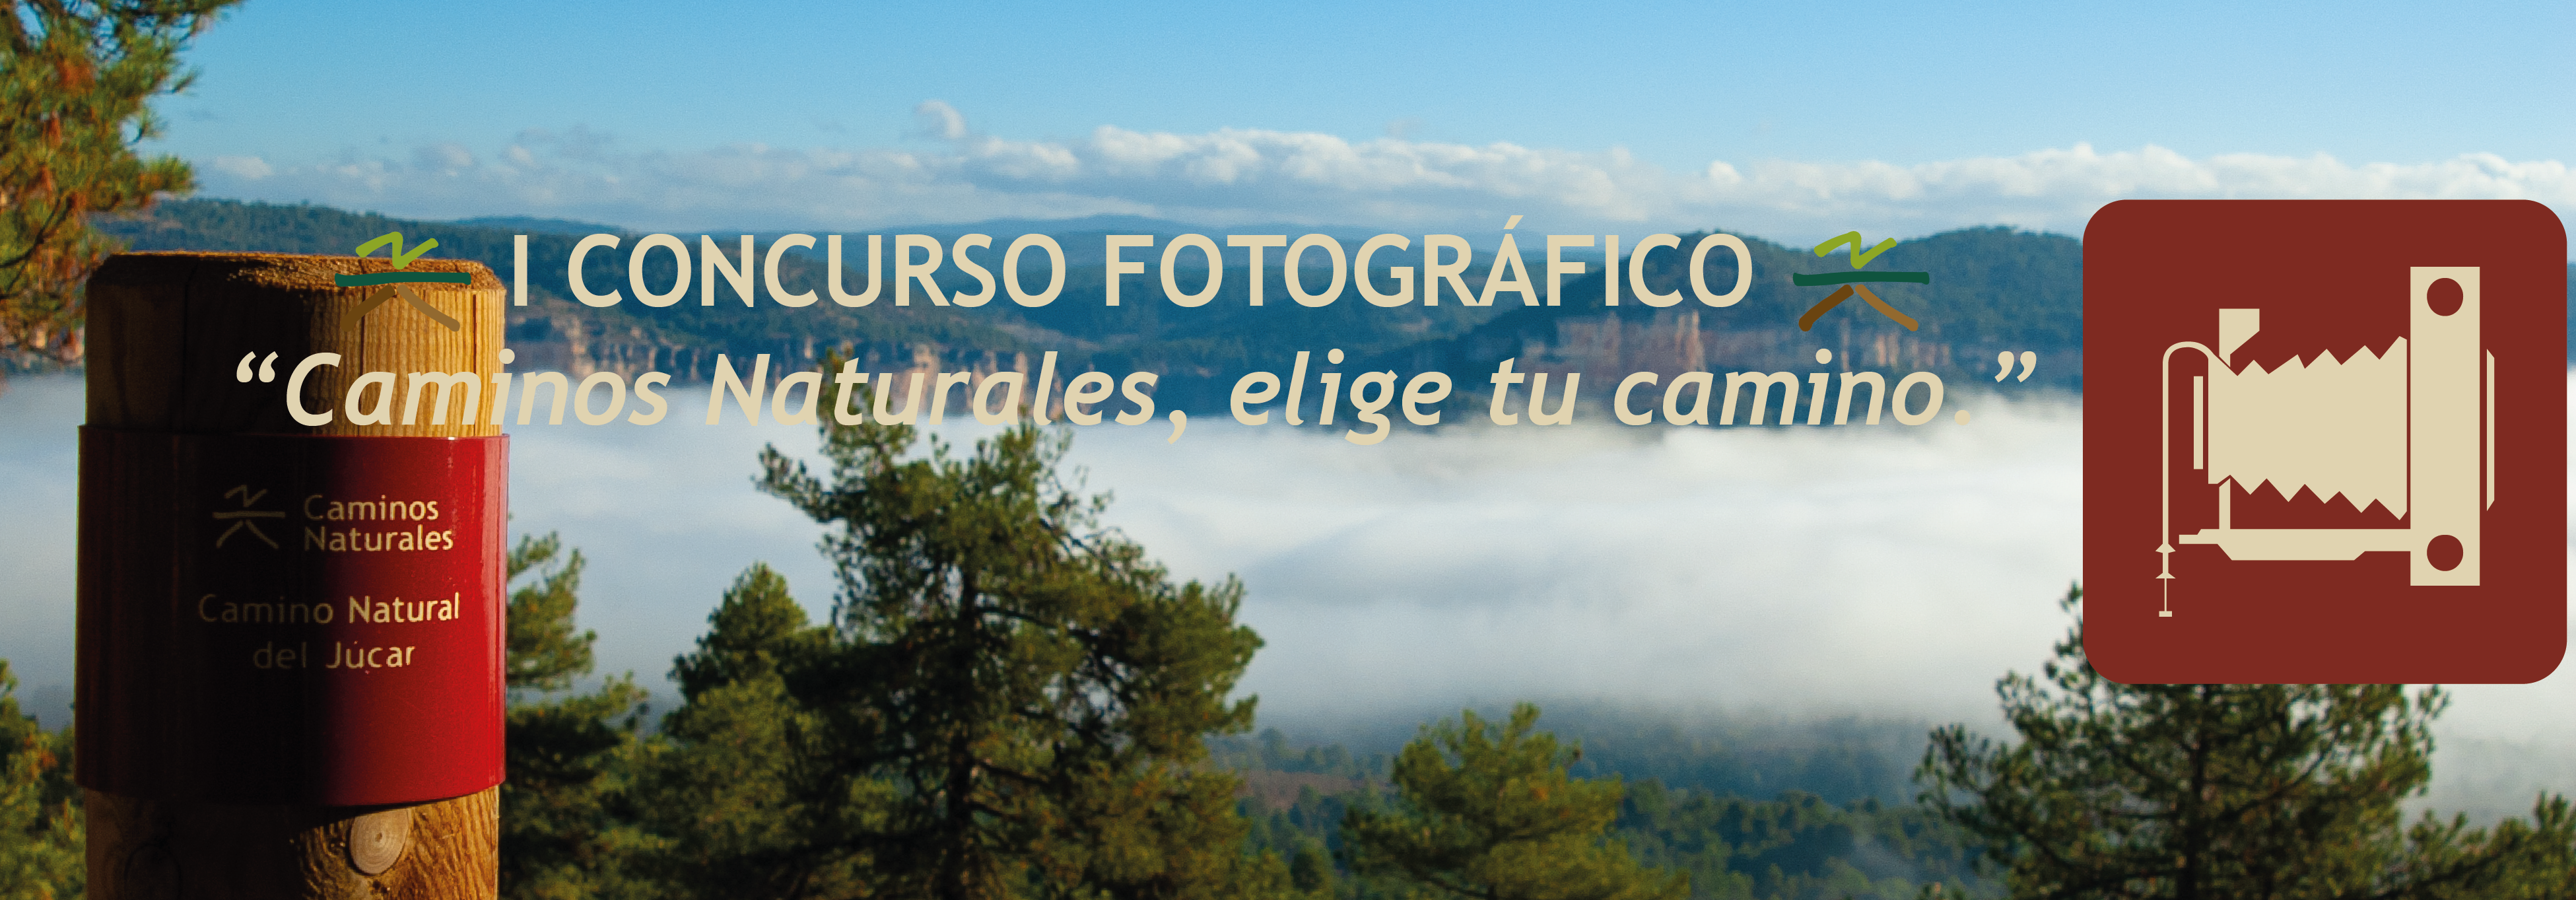 I Concurso de fotografía Caminos Naturales de España